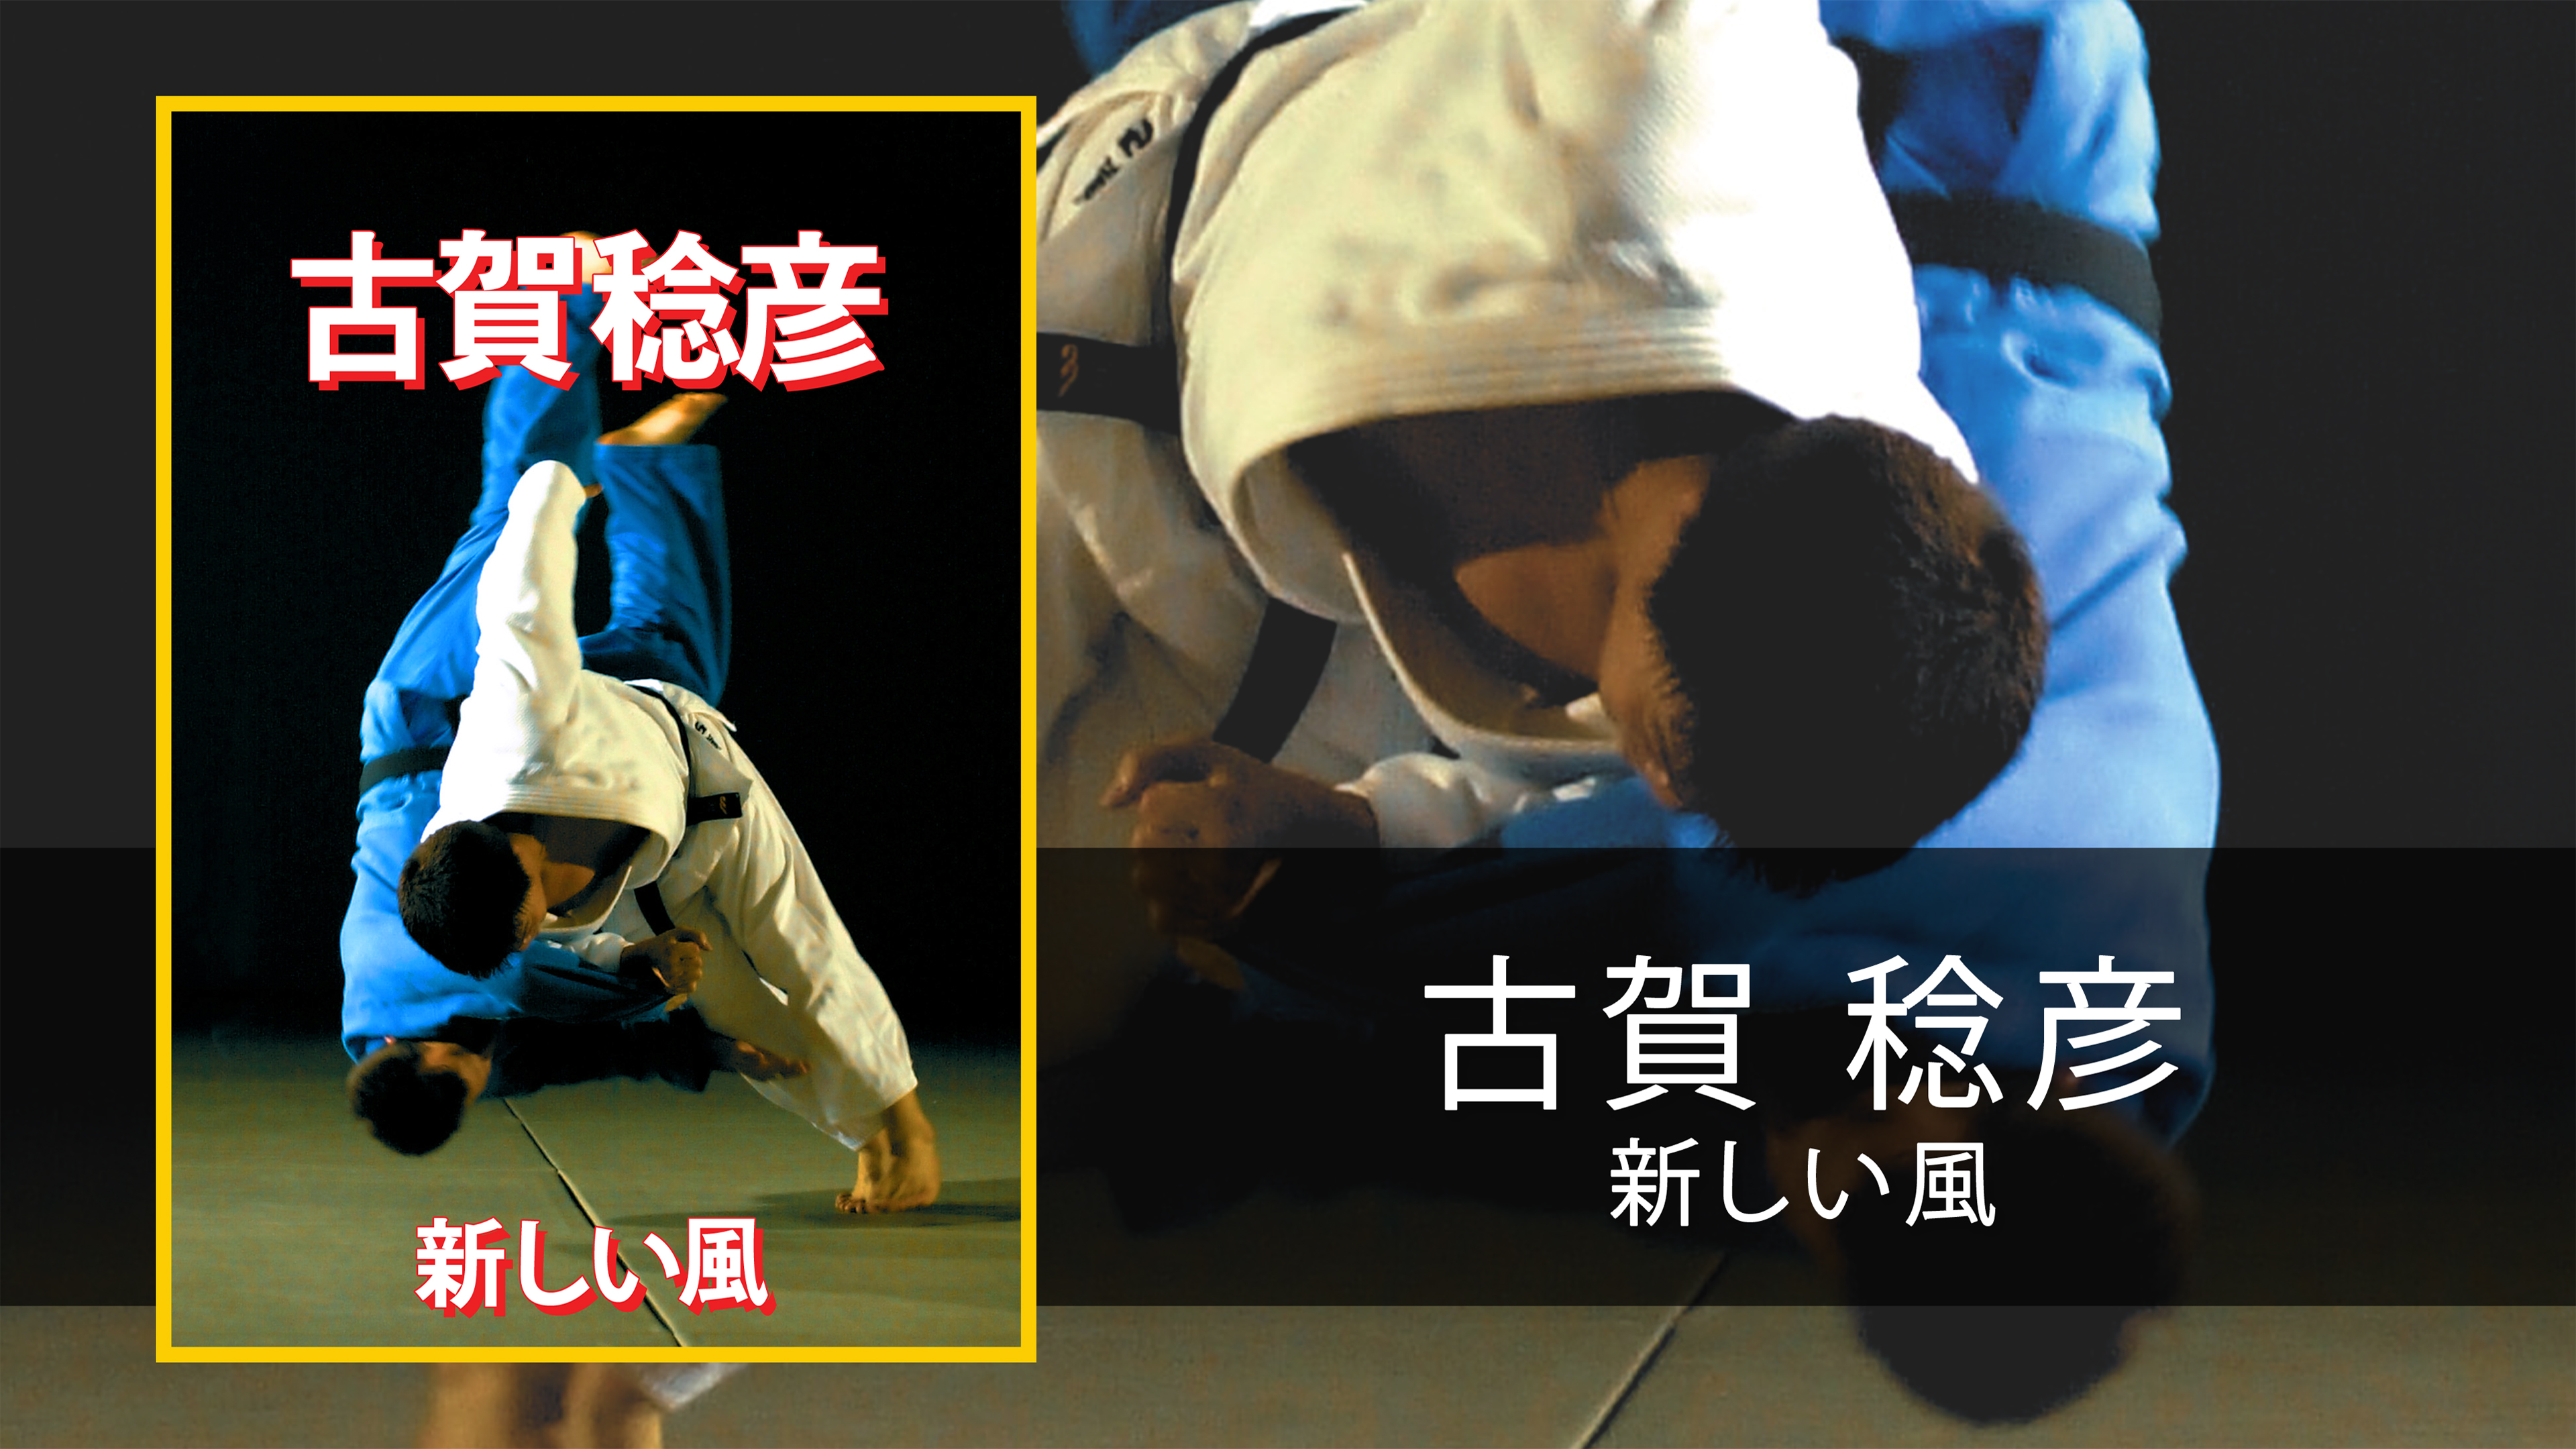 古賀 稔彦 Koga Toshihiko - 新しい風 (日本語) - Superstar Judo